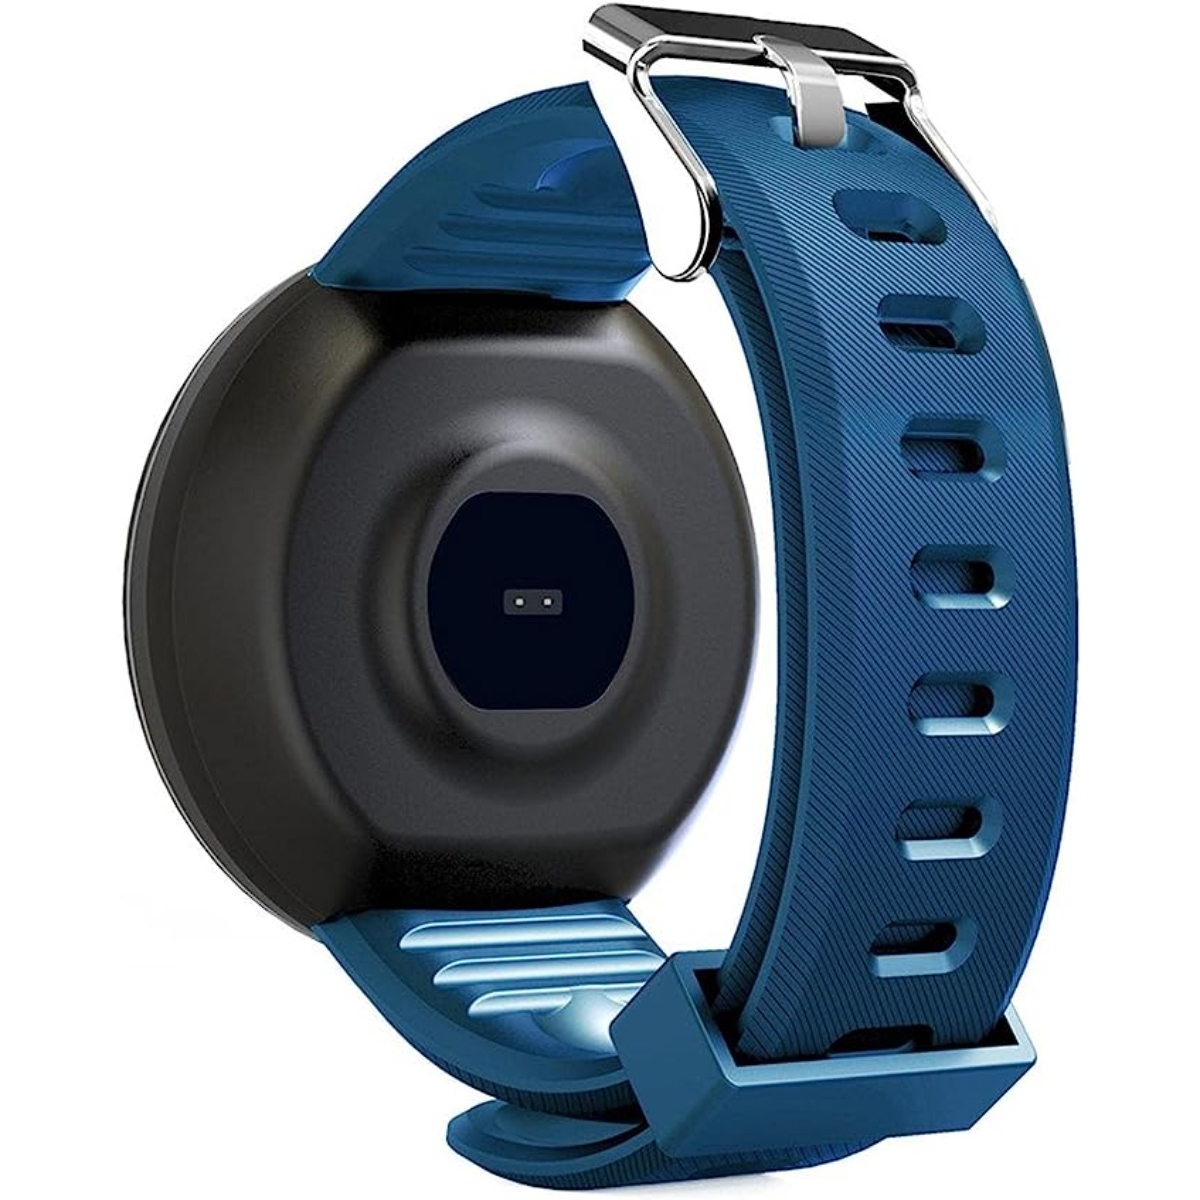 Reloj Smartwatch Klack Kd18 Con Frecuencia Cardíaca, Presión Arterial Y Notificaciones